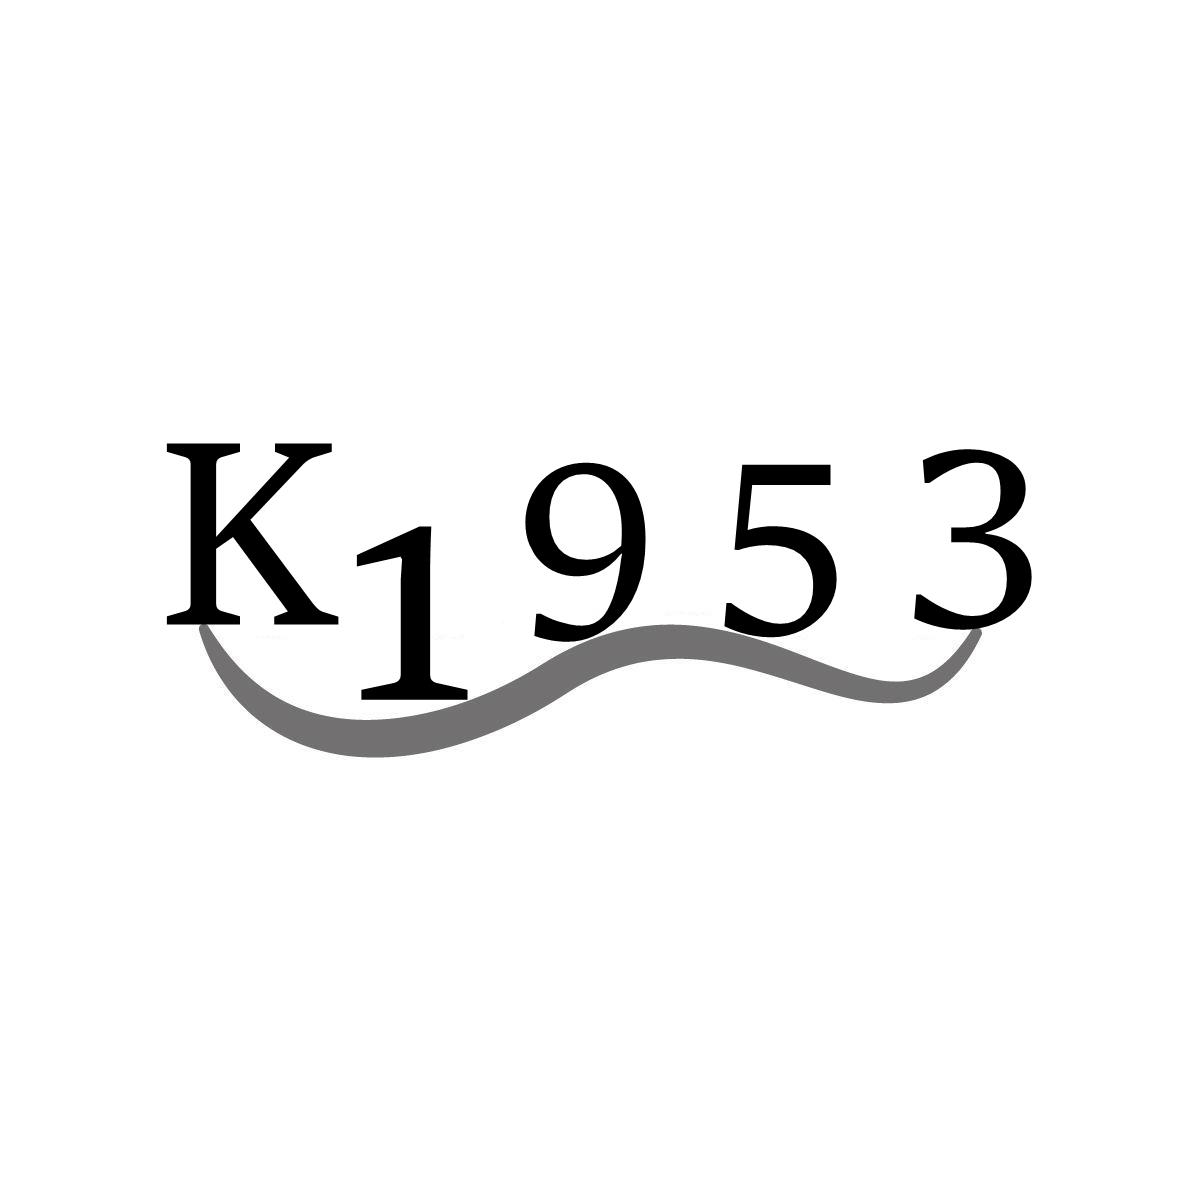 K1953